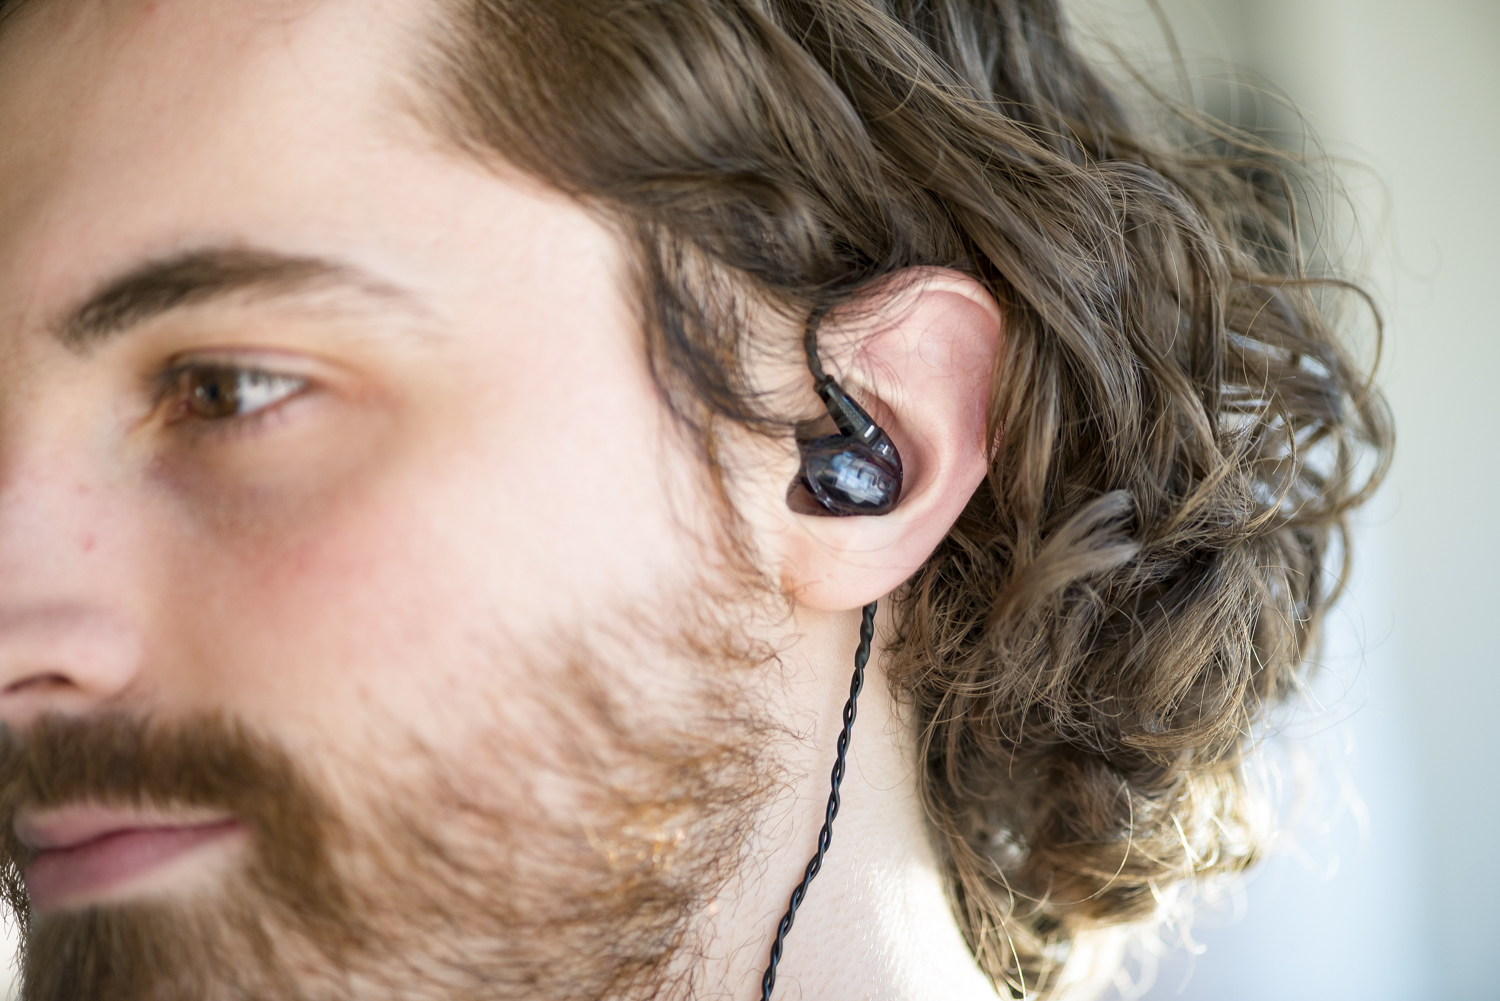 Massdrop x NuForce EDC3 in-ear headphone review